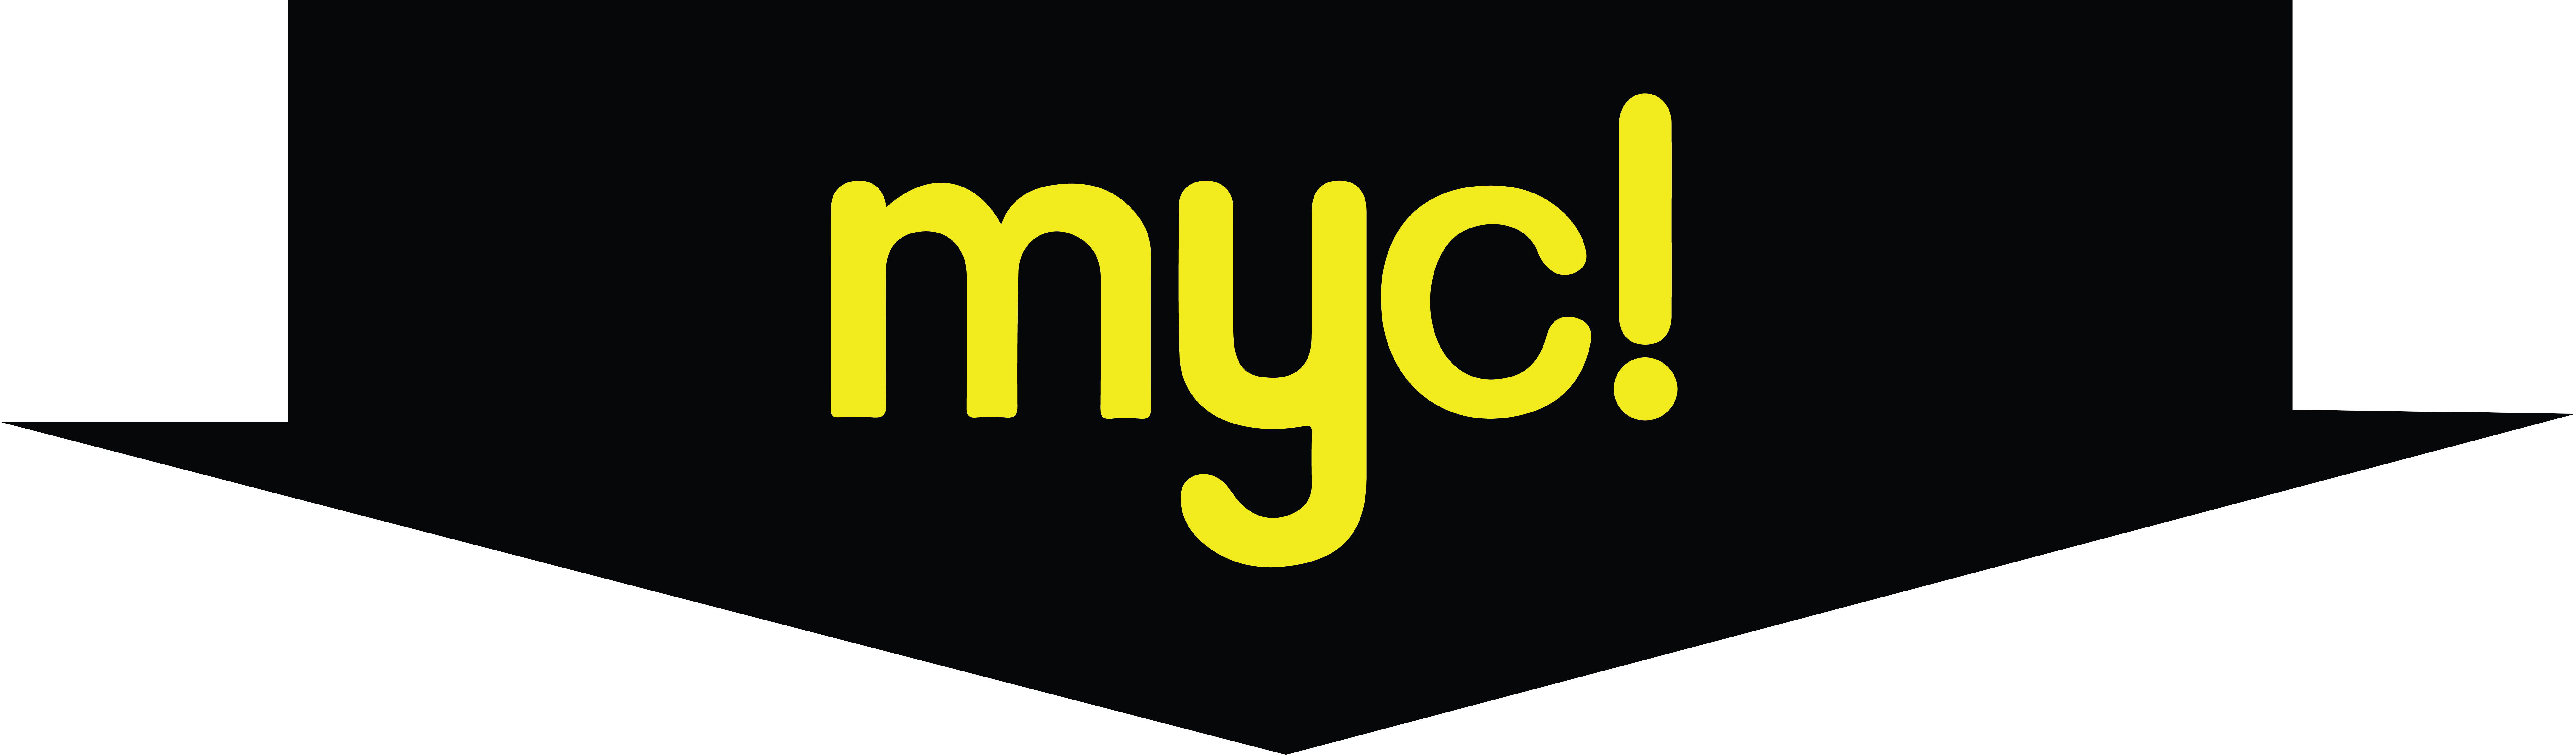 MYC-about-header